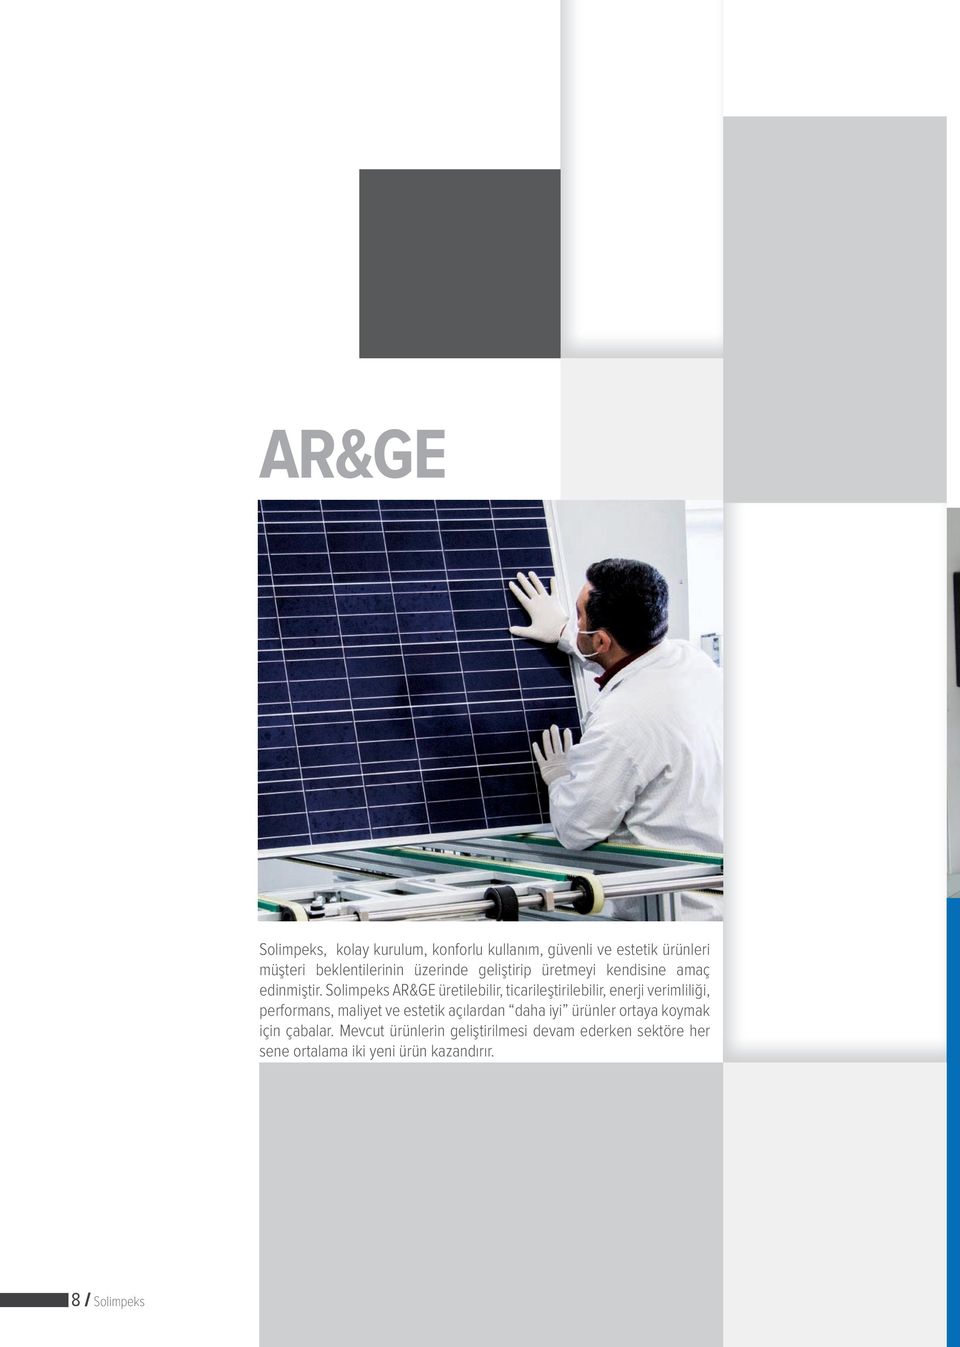 Solimpeks AR&GE üretilebilir, ticarileştirilebilir, enerji verimliliği, performans, maliyet ve estetik